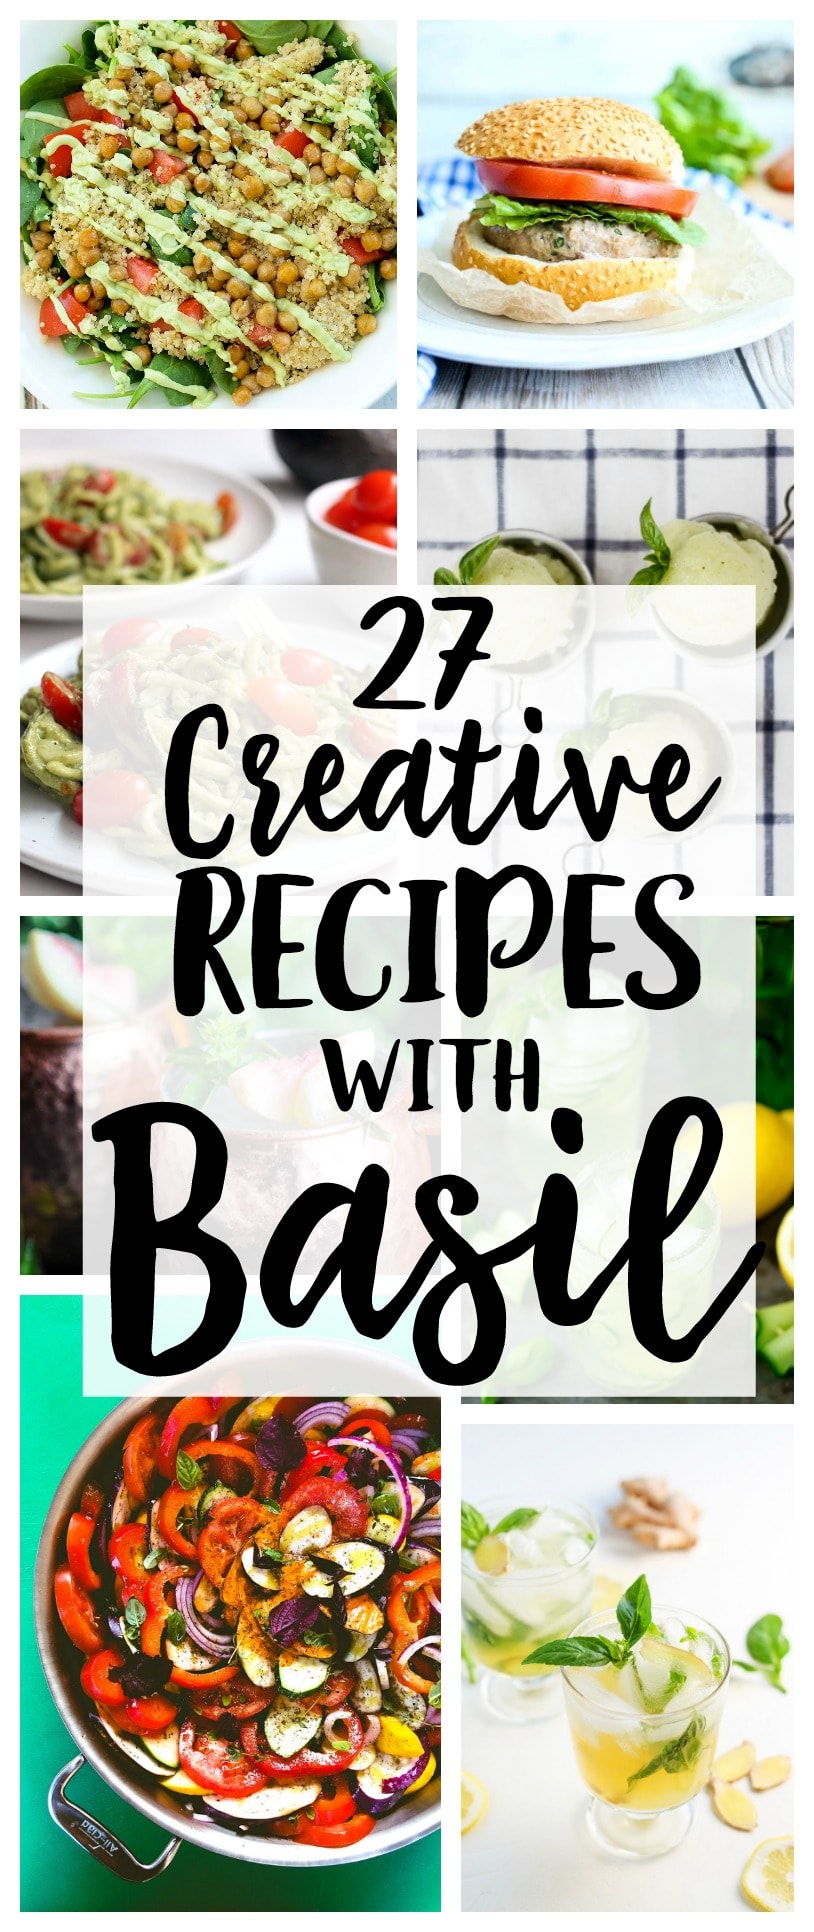 Basil recipes | summer garden | easy recipes | summer recipes 